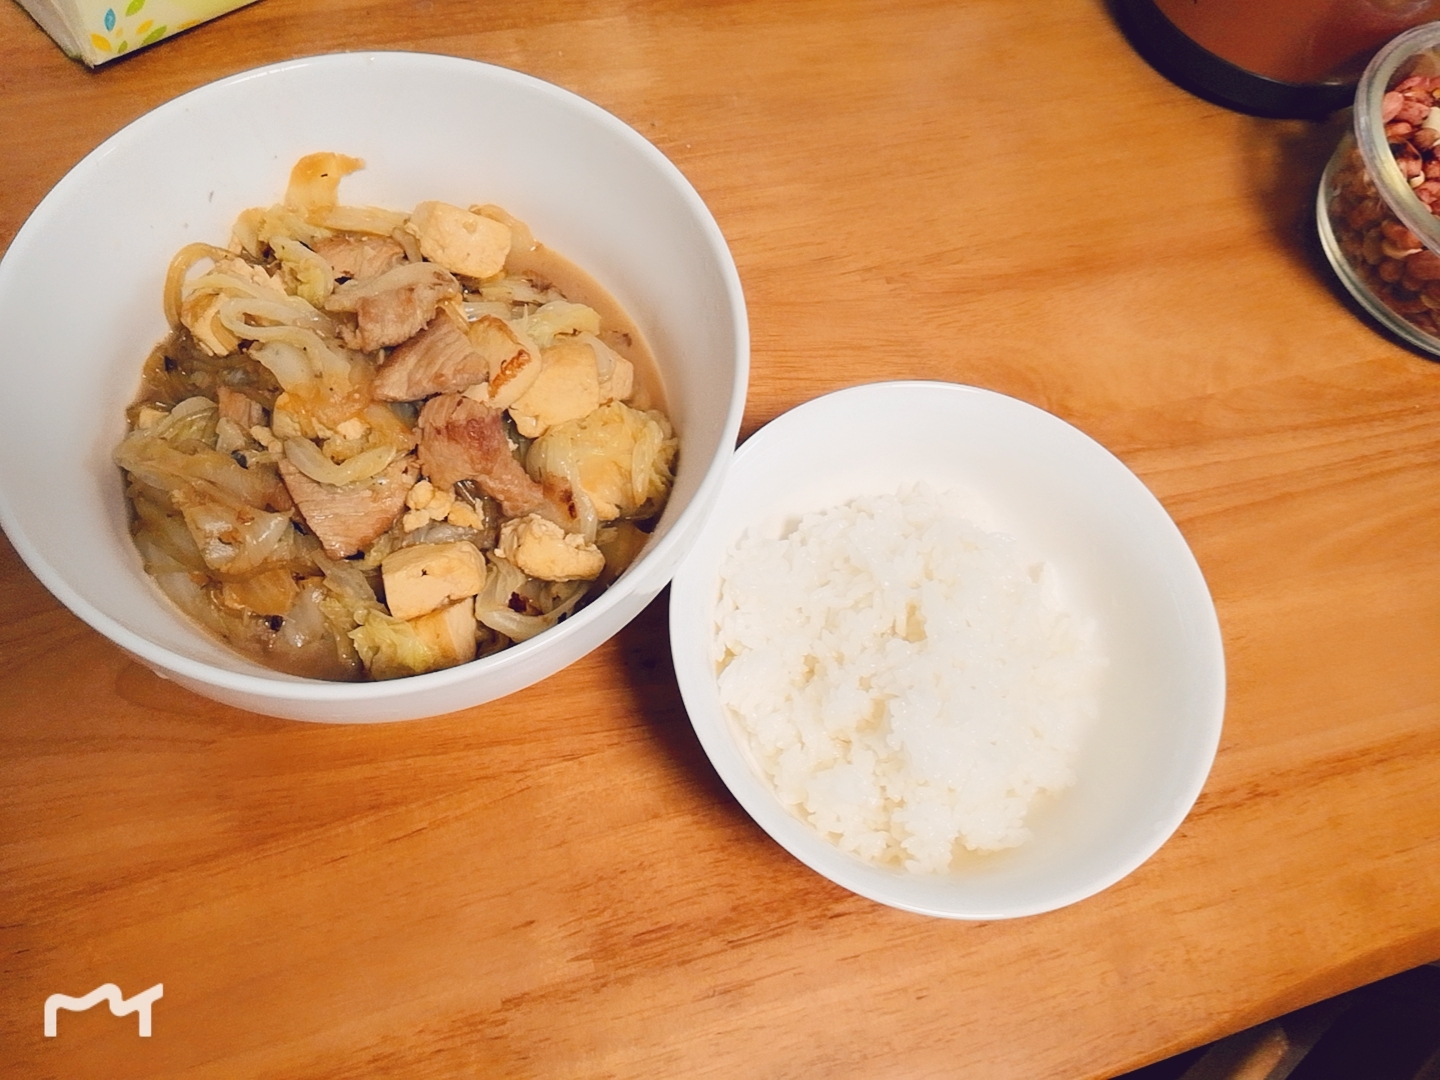 大白菜五花肉豆腐炖粉条的做法